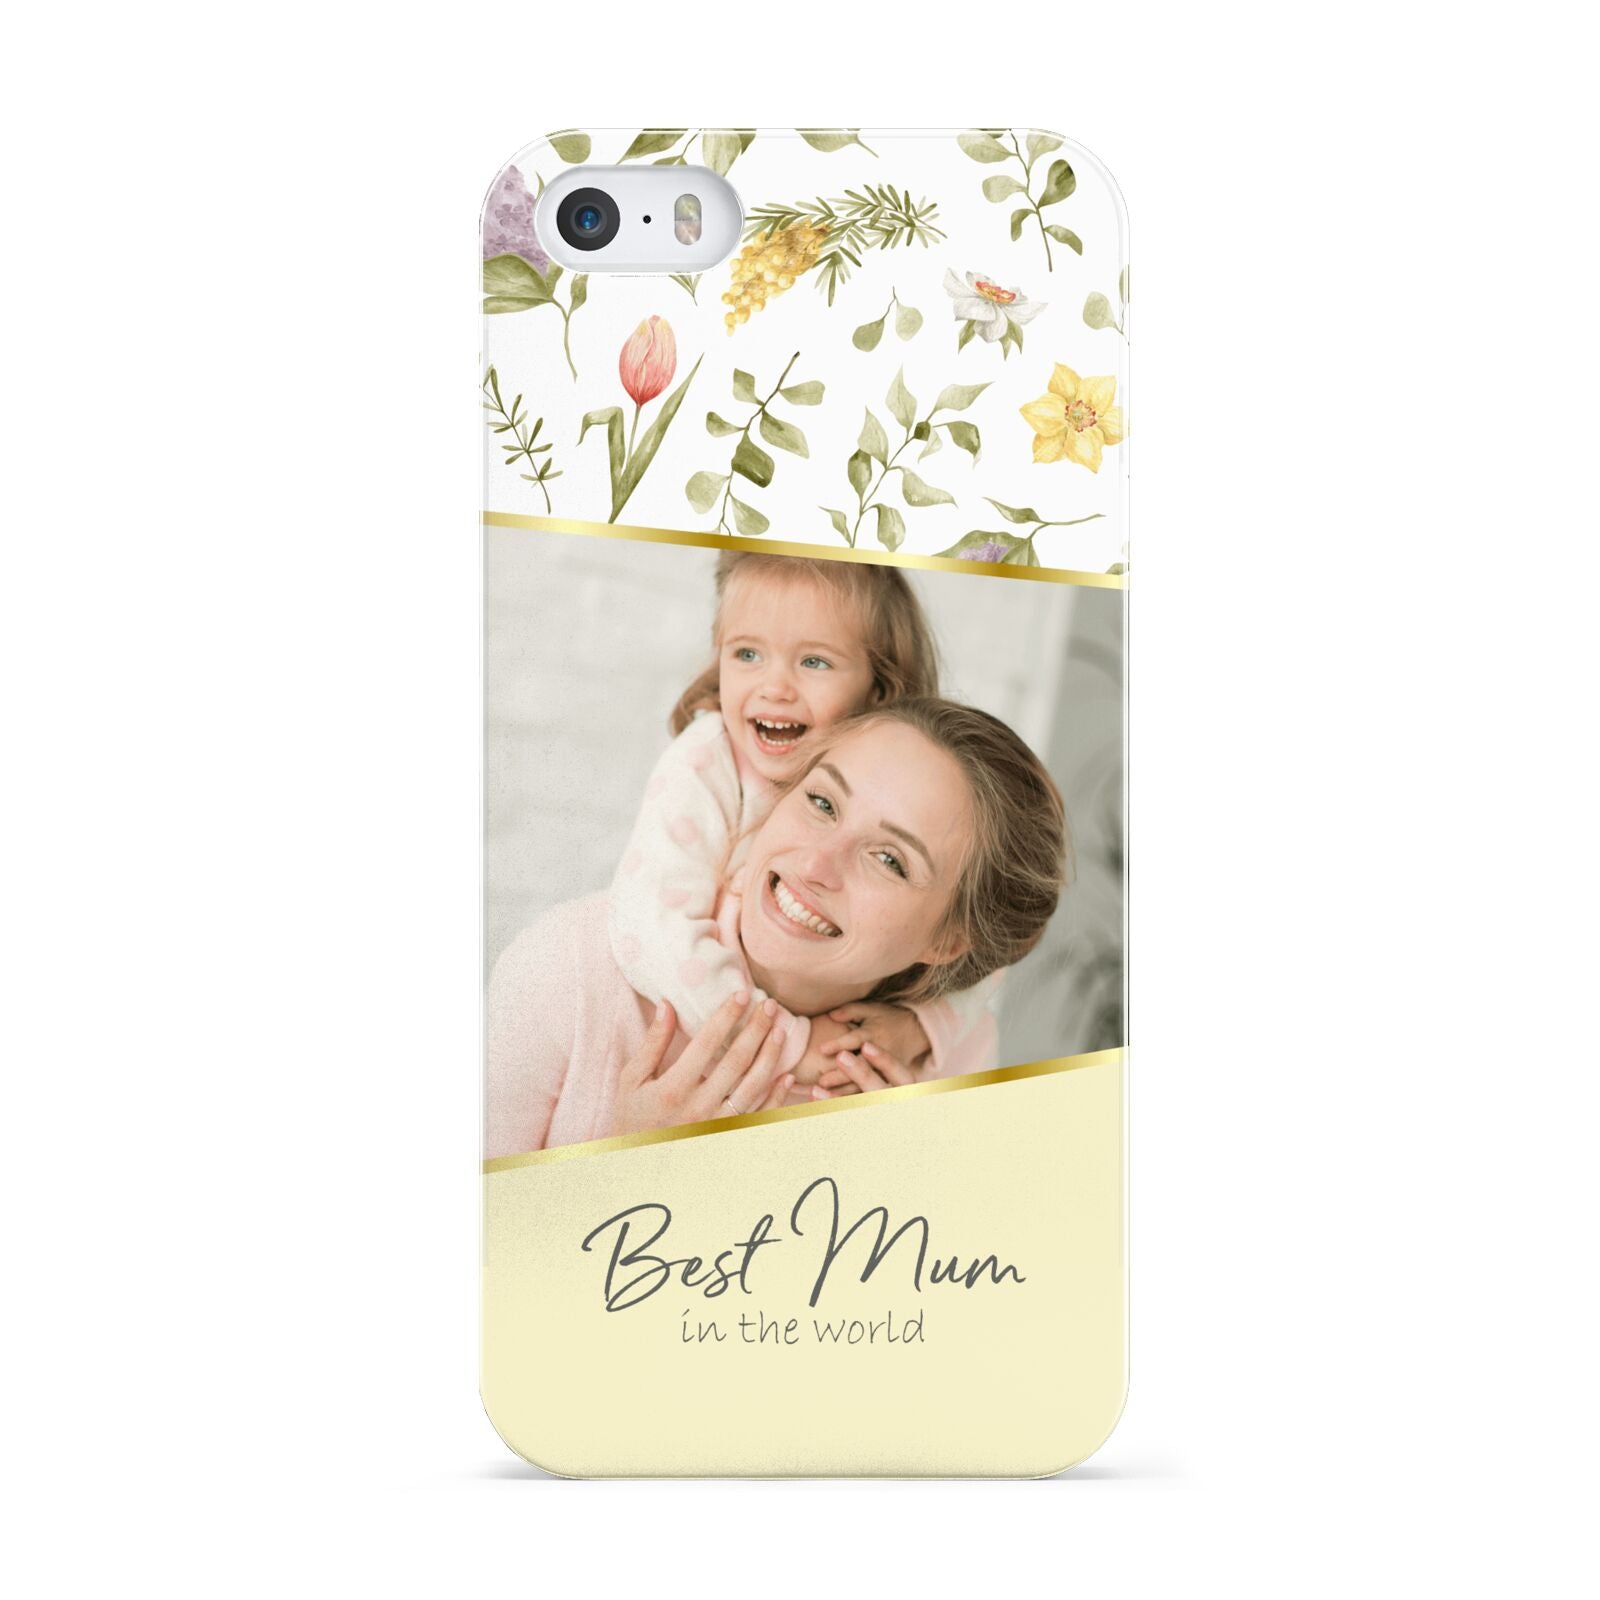 Personalised Best Mum Apple iPhone 5 Case